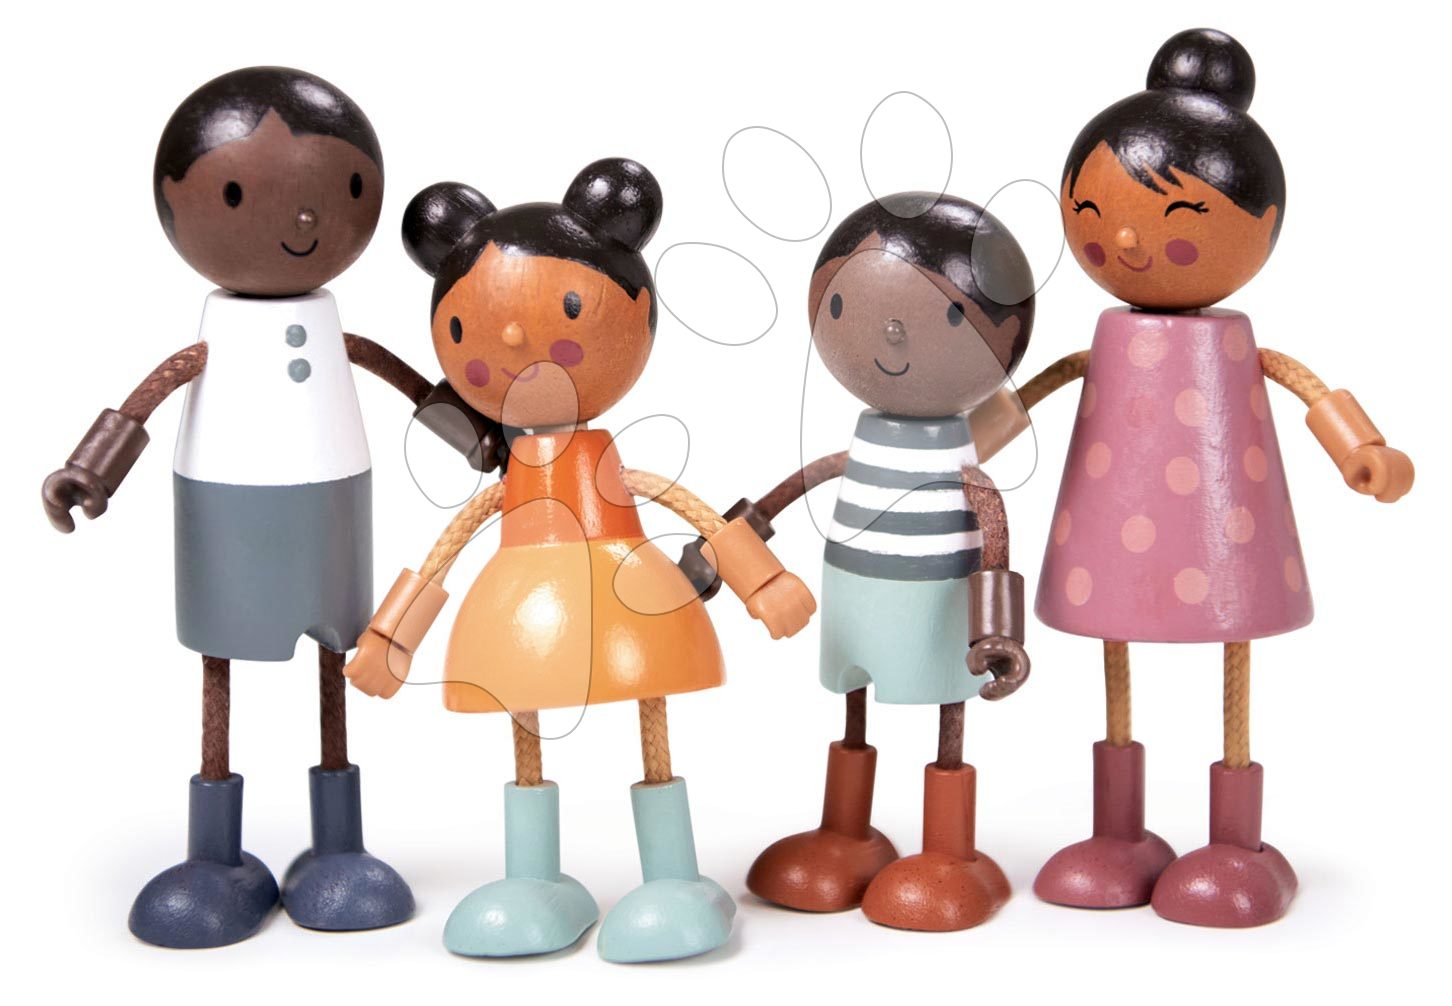 Drevená rodinka multikultúrna Humming Bird Doll Family Tender Leaf Toys 4 postavičky s pohyblivými končatinami